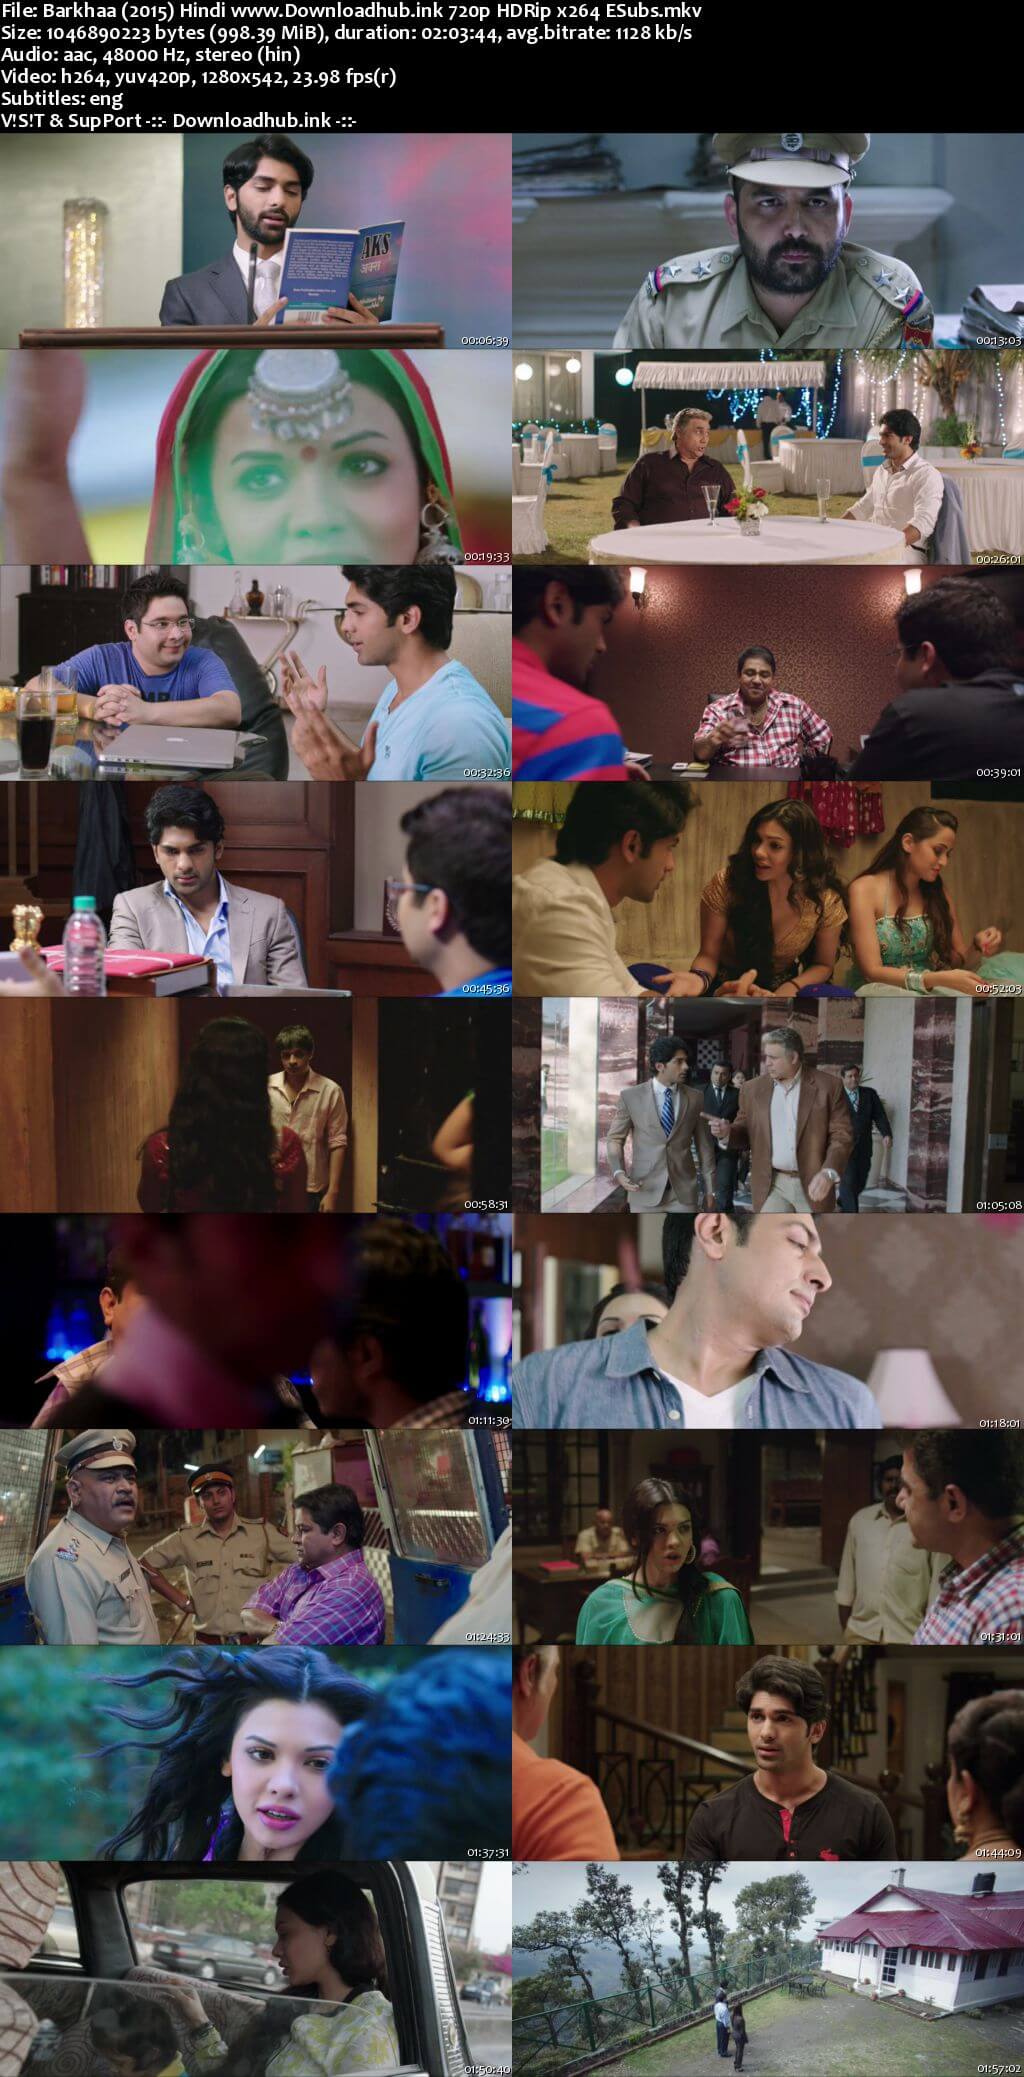 Barkhaa 2015 Hindi 720p HDRip ESubs